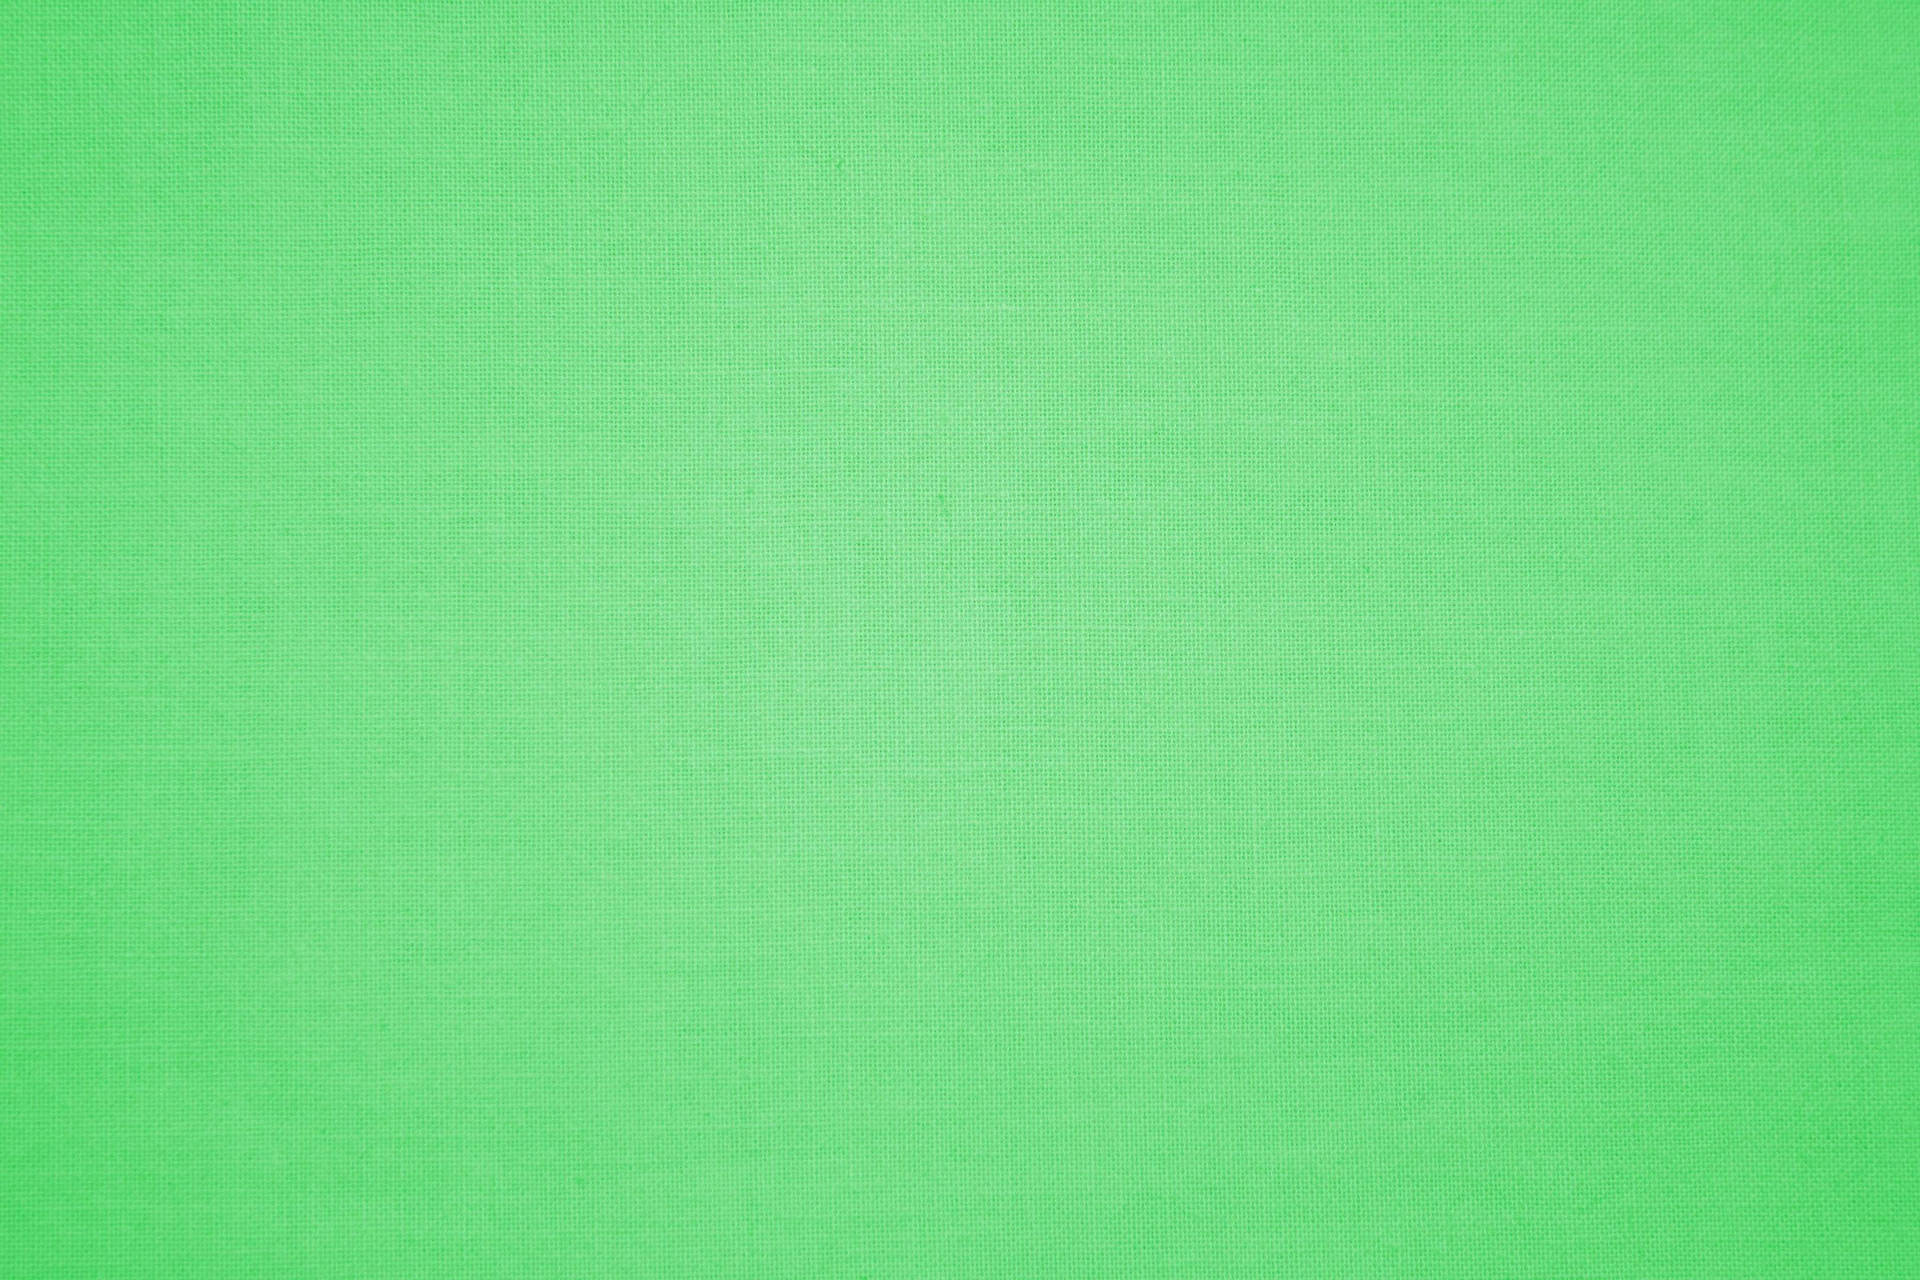 Enkeltexturerad Ljusgrön Wallpaper